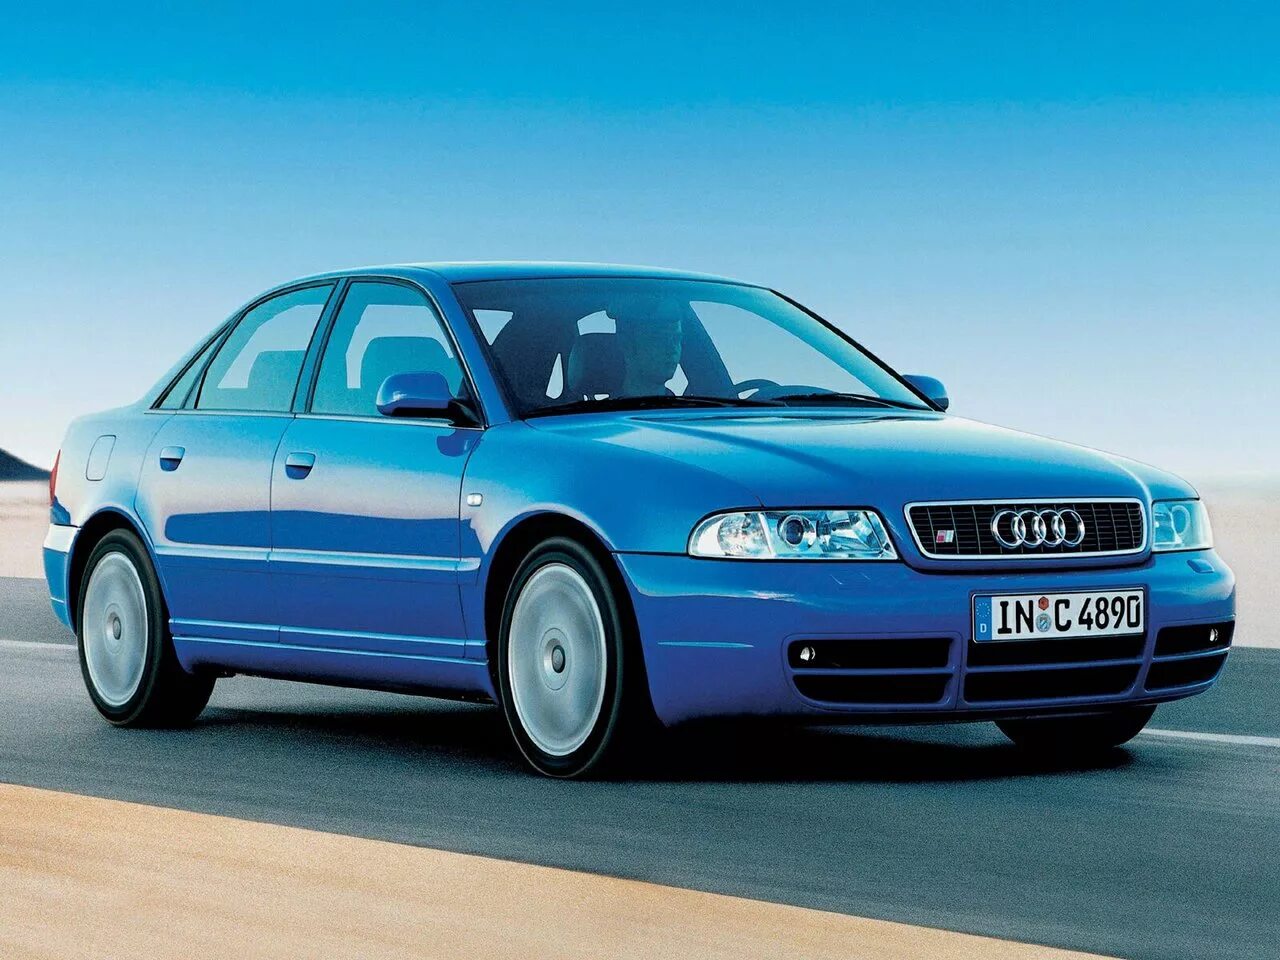 B 5 b2 7. Ауди s4 b5. Audi s4 1997. Audi a4 b5 1997. Audi a4 b5 s4.